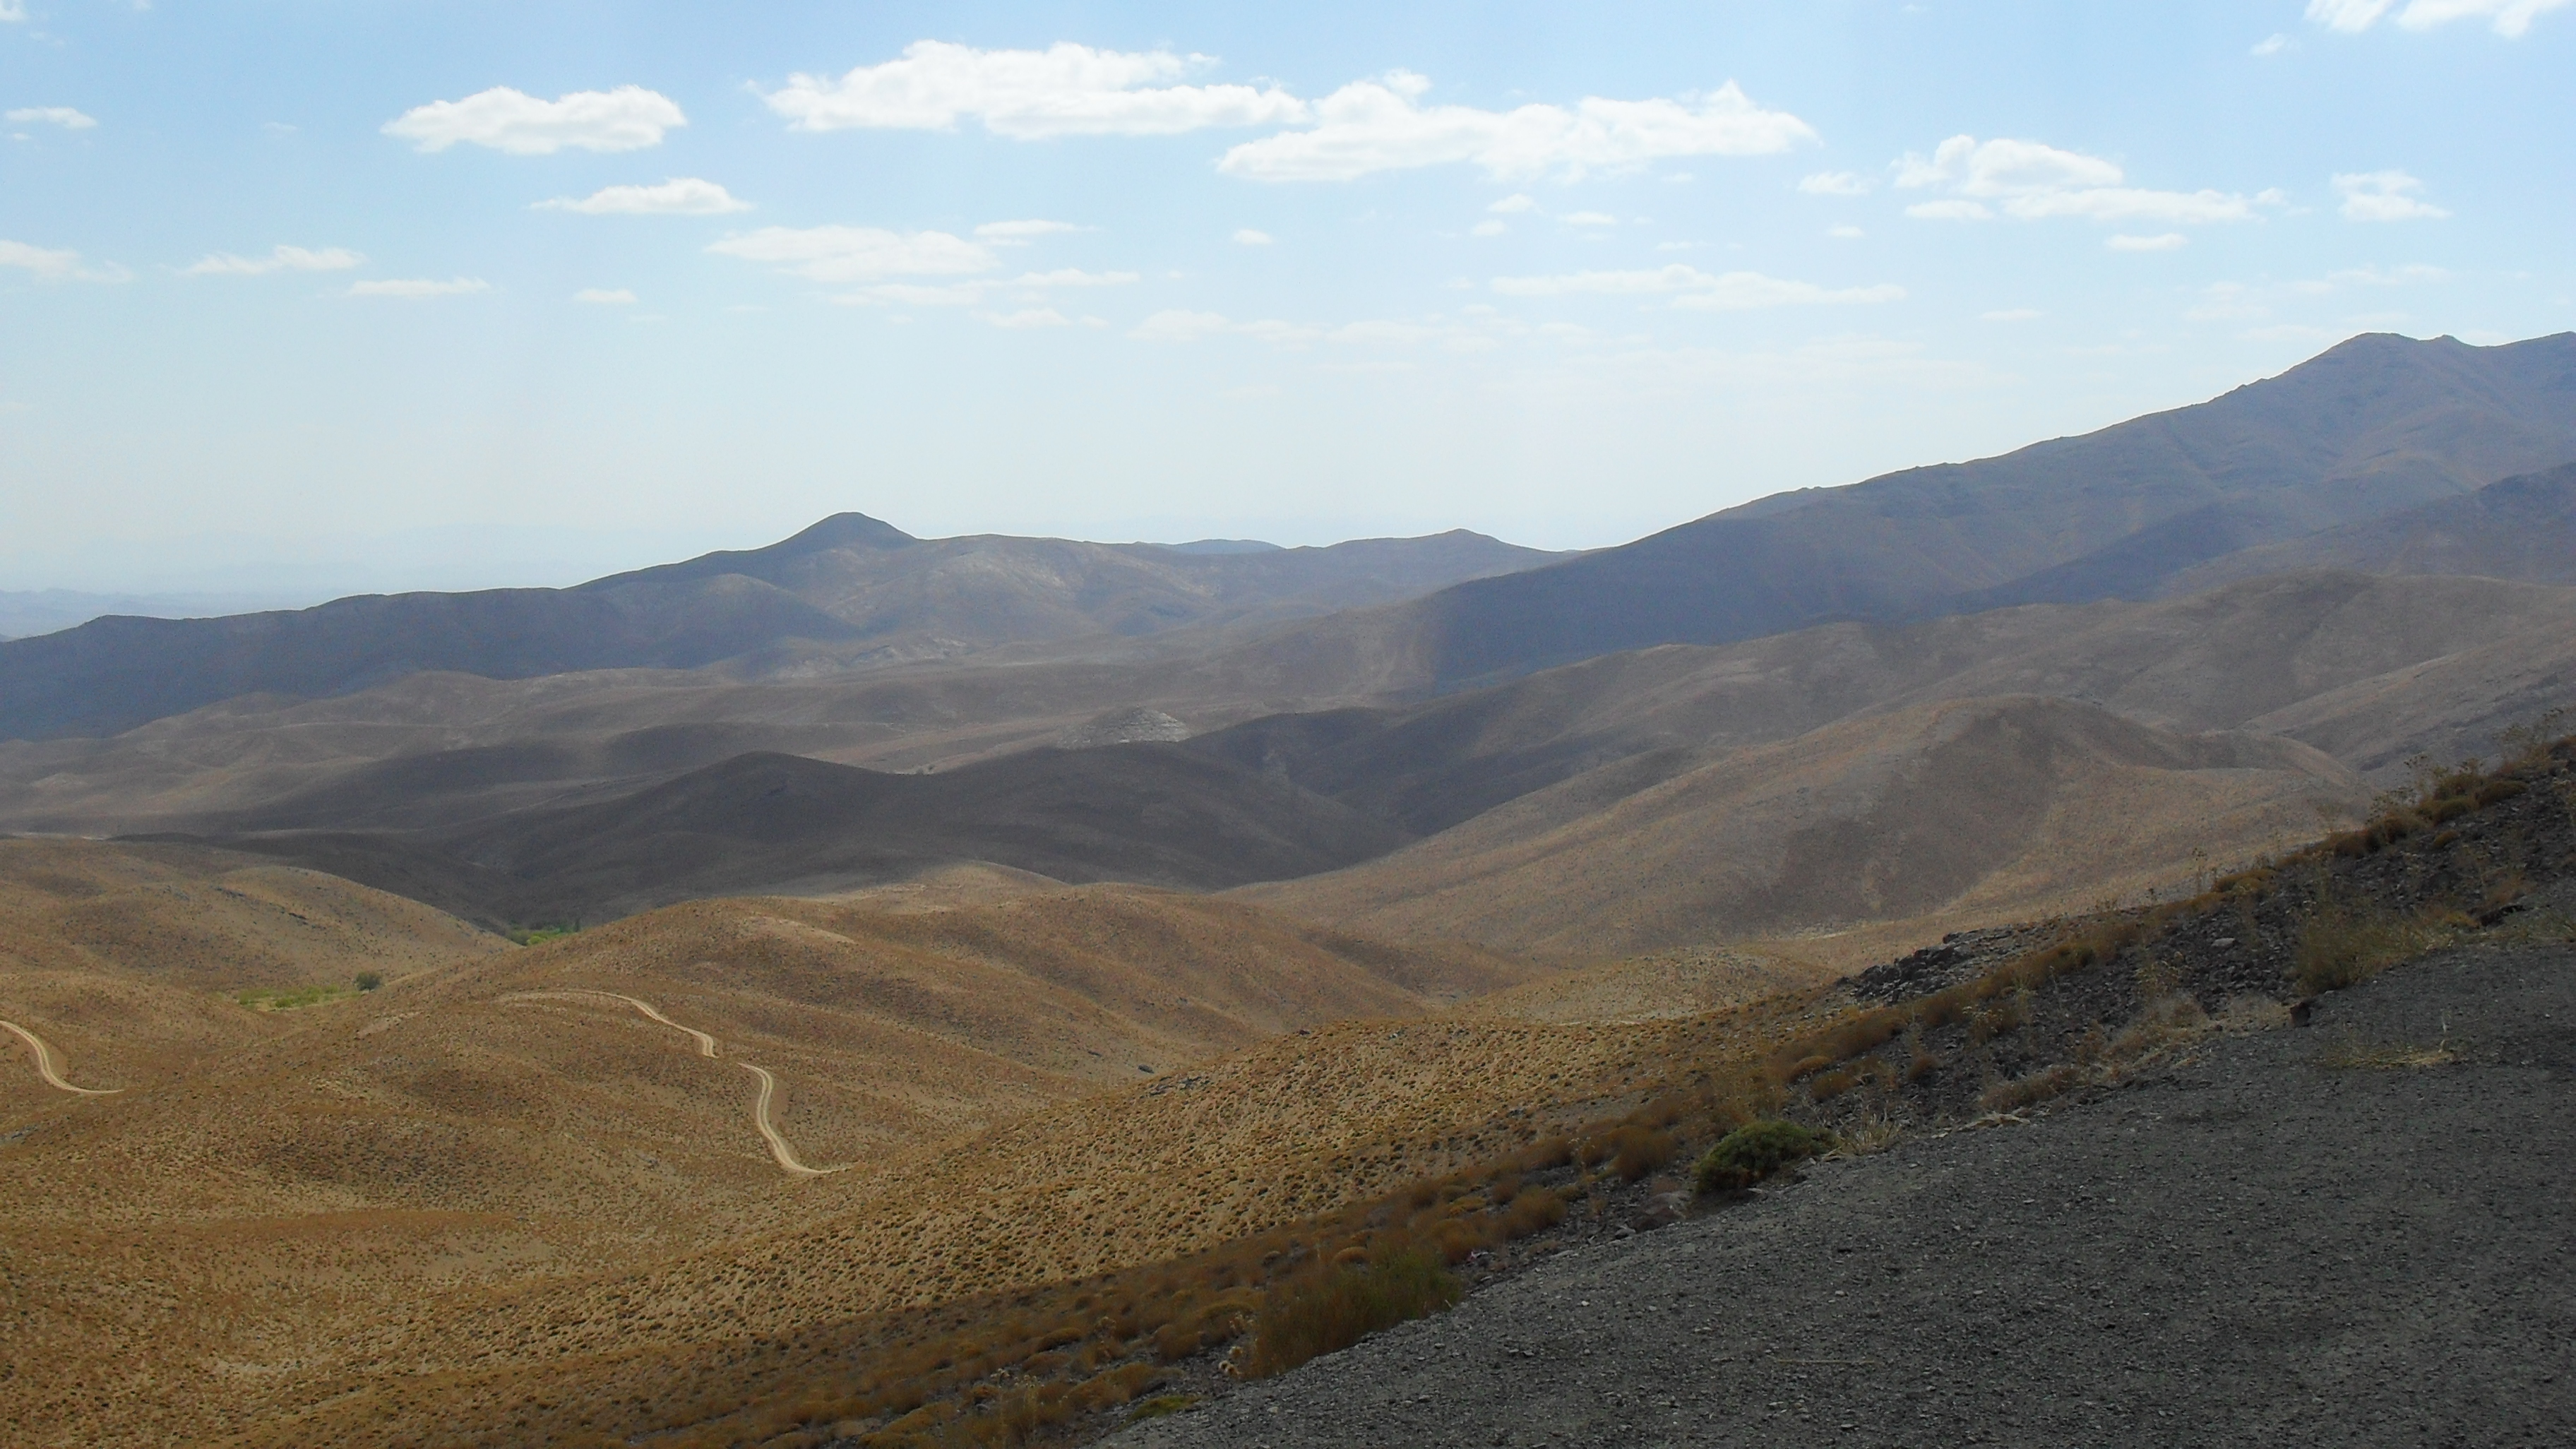 صدور مجوز جدید معدن در نطنز / آثار طبیعی ثبت ملی از معادن در امان نیستند